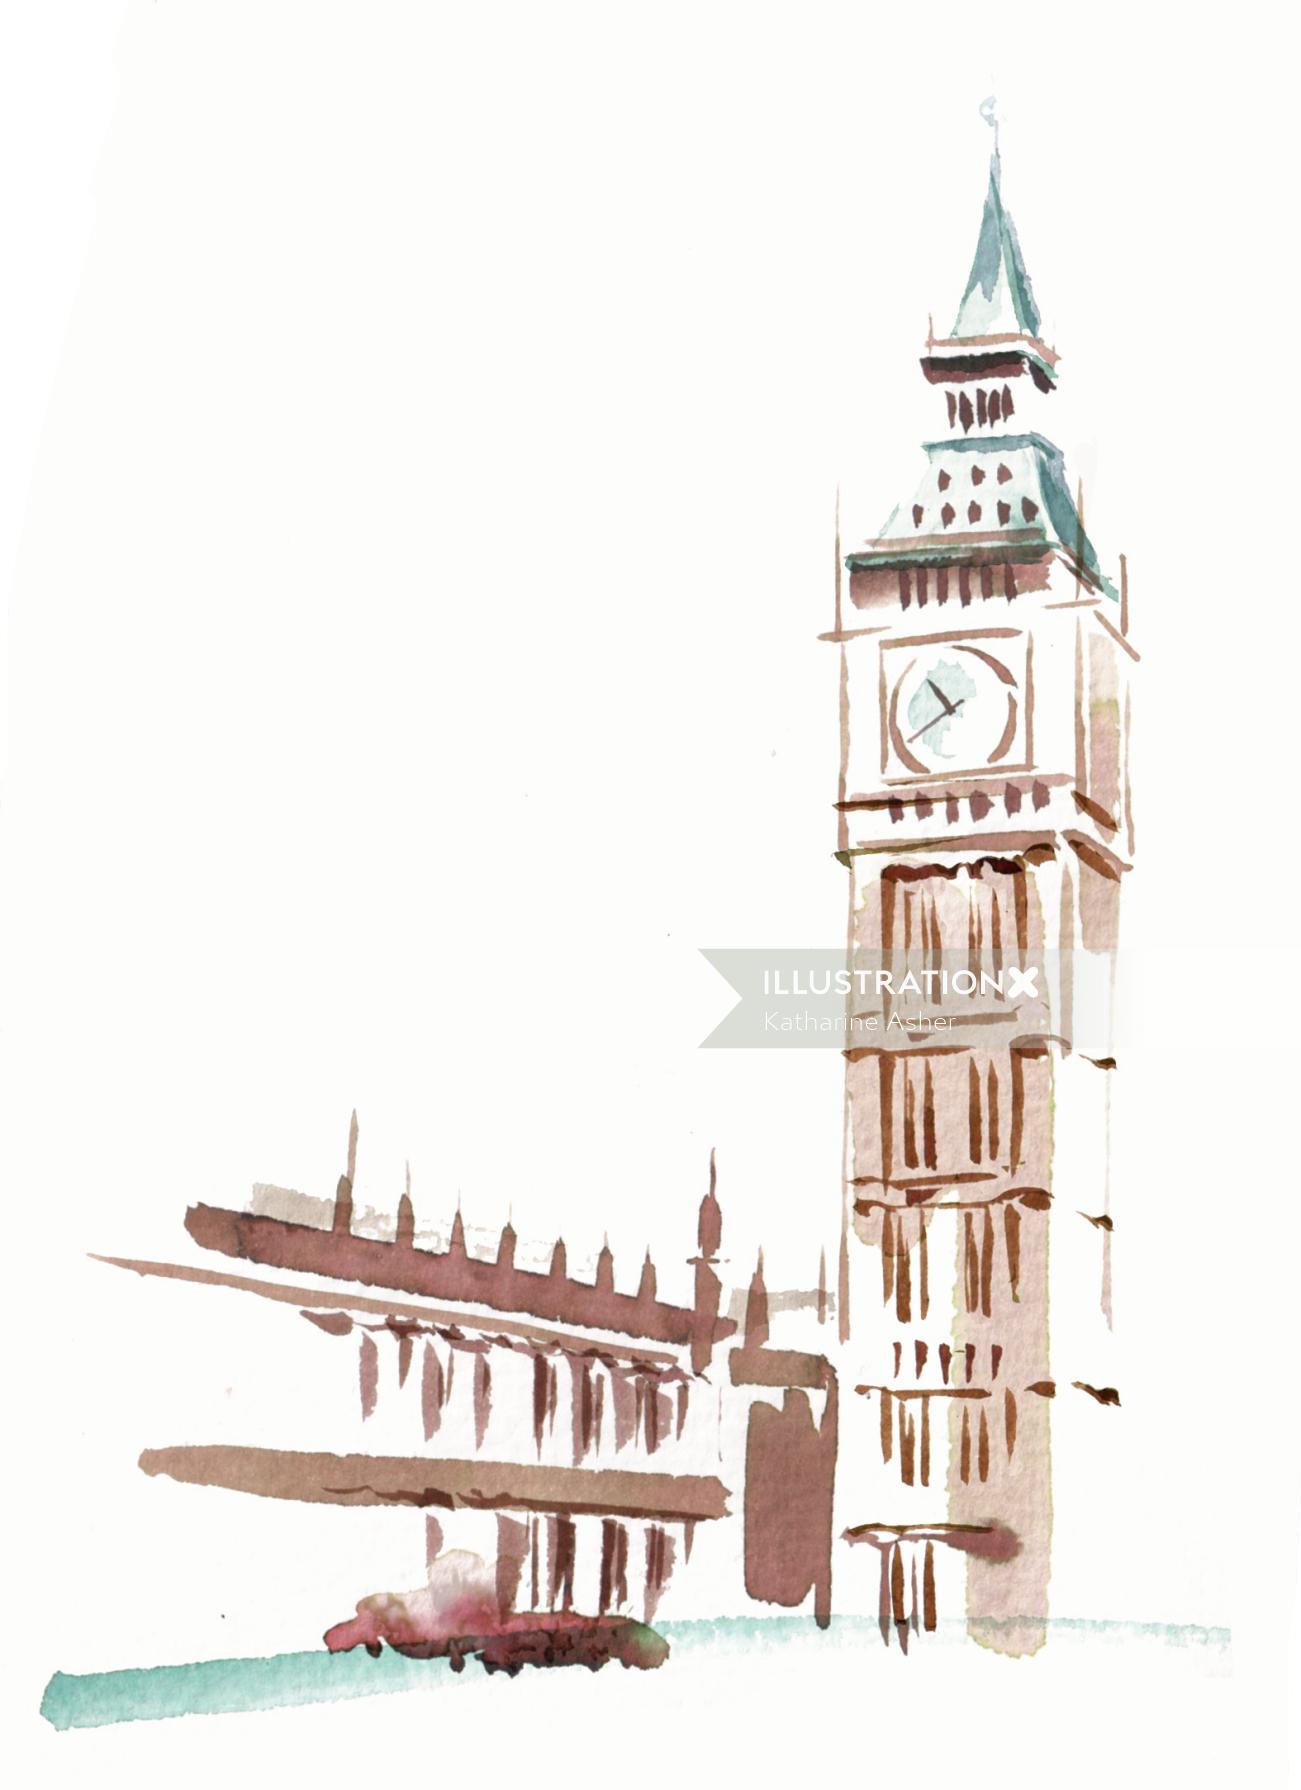 キャサリンアッシャーによる時計塔のイラスト